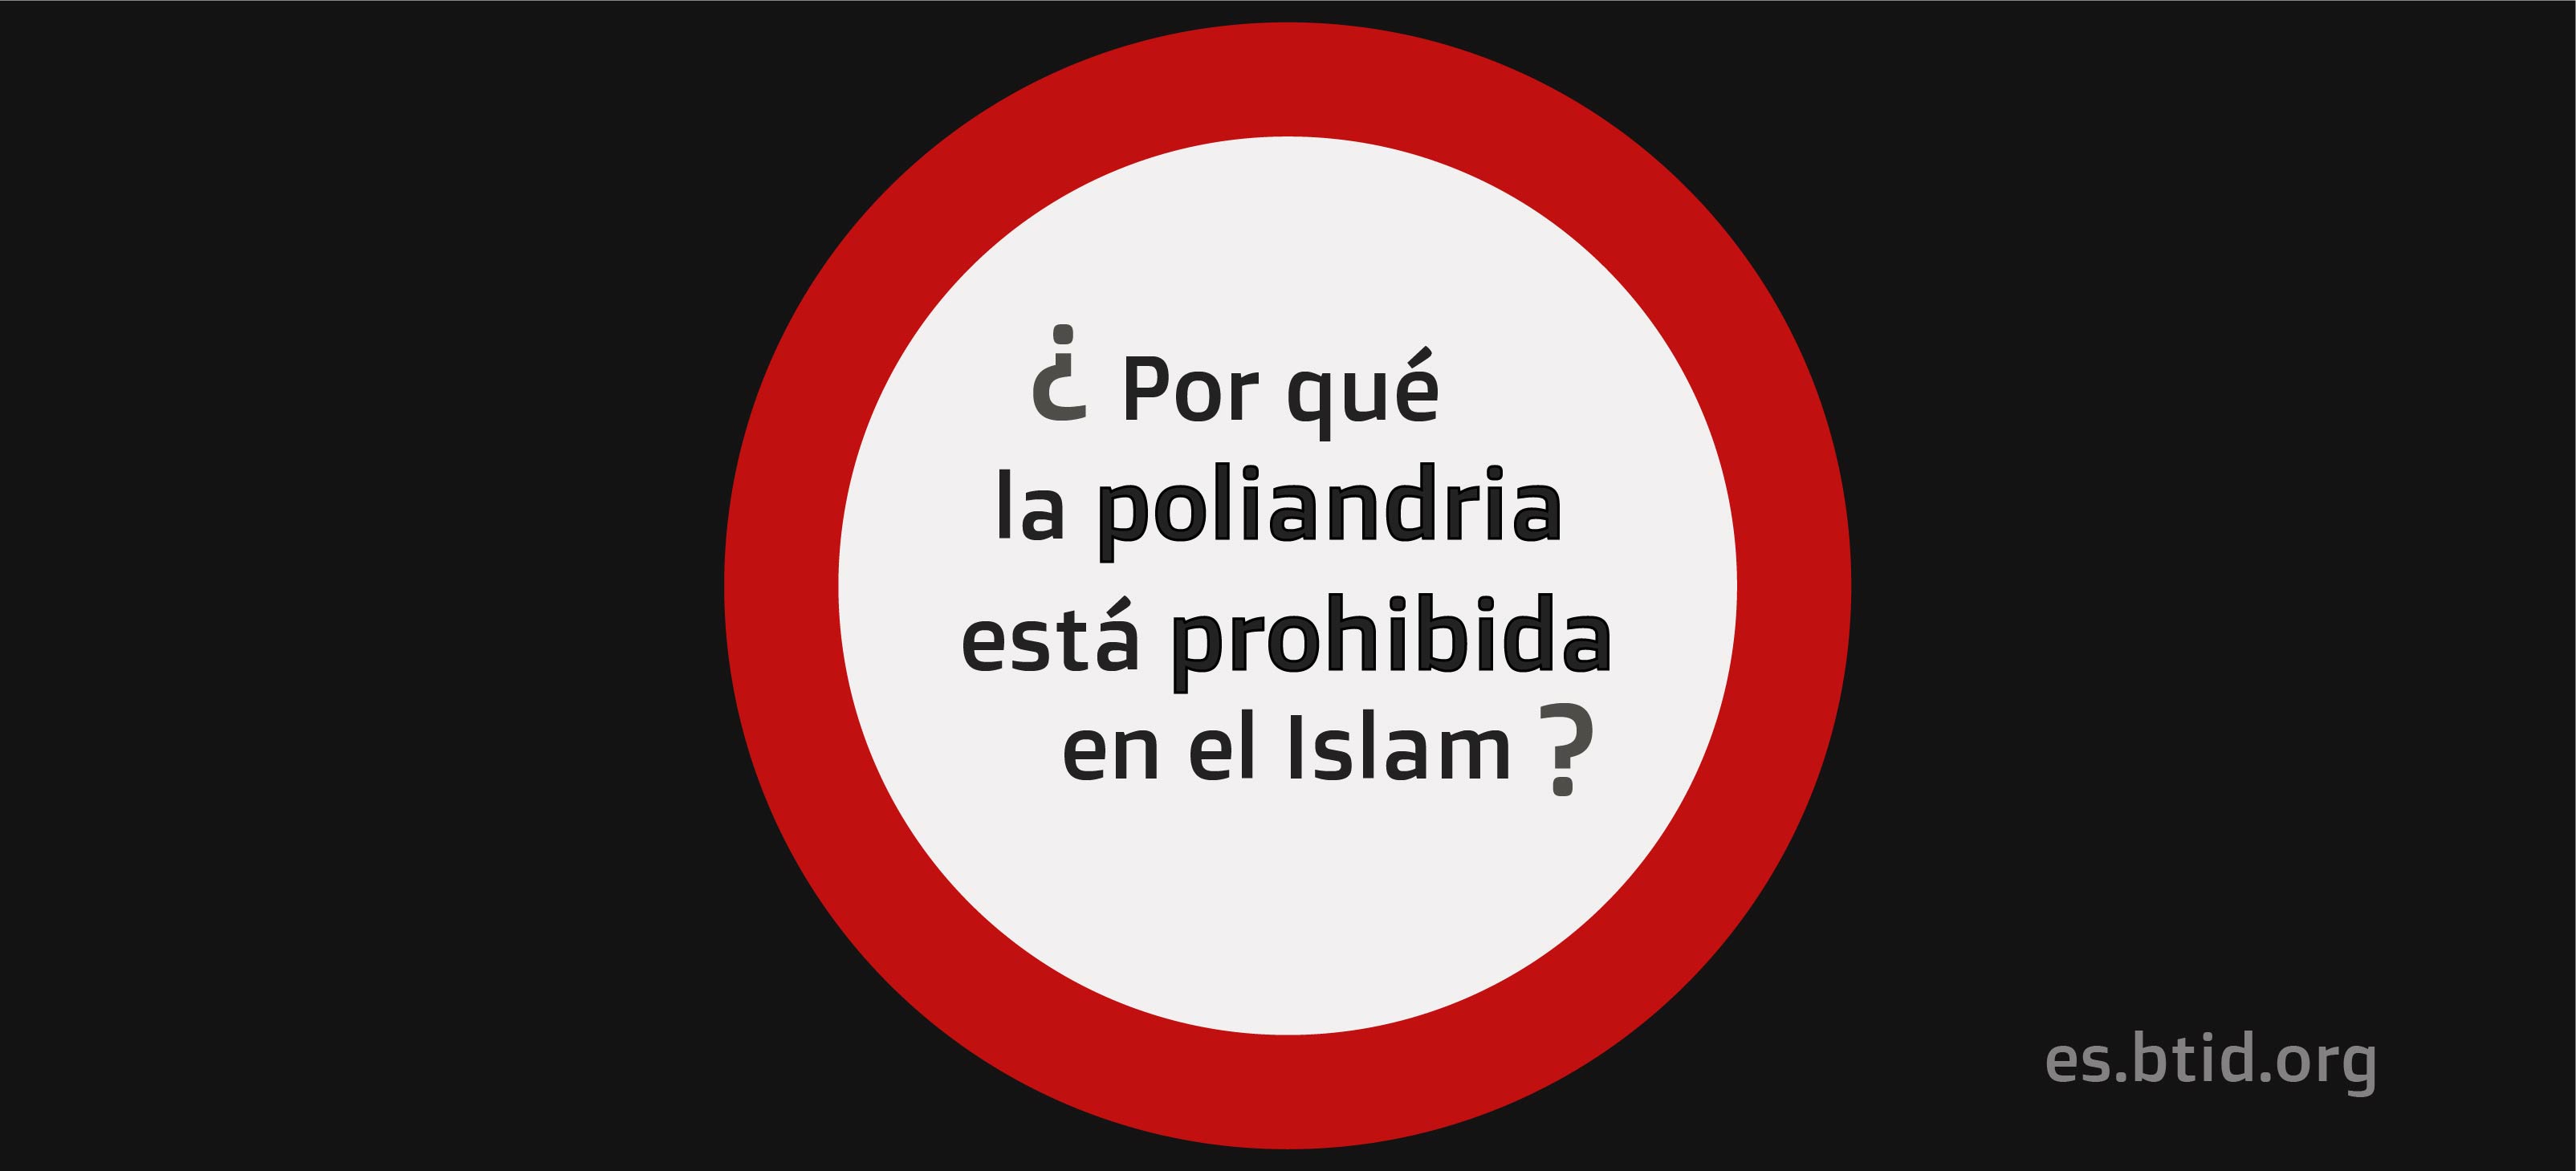 ¿Por qué la poliandria está prohibida en el Islam?